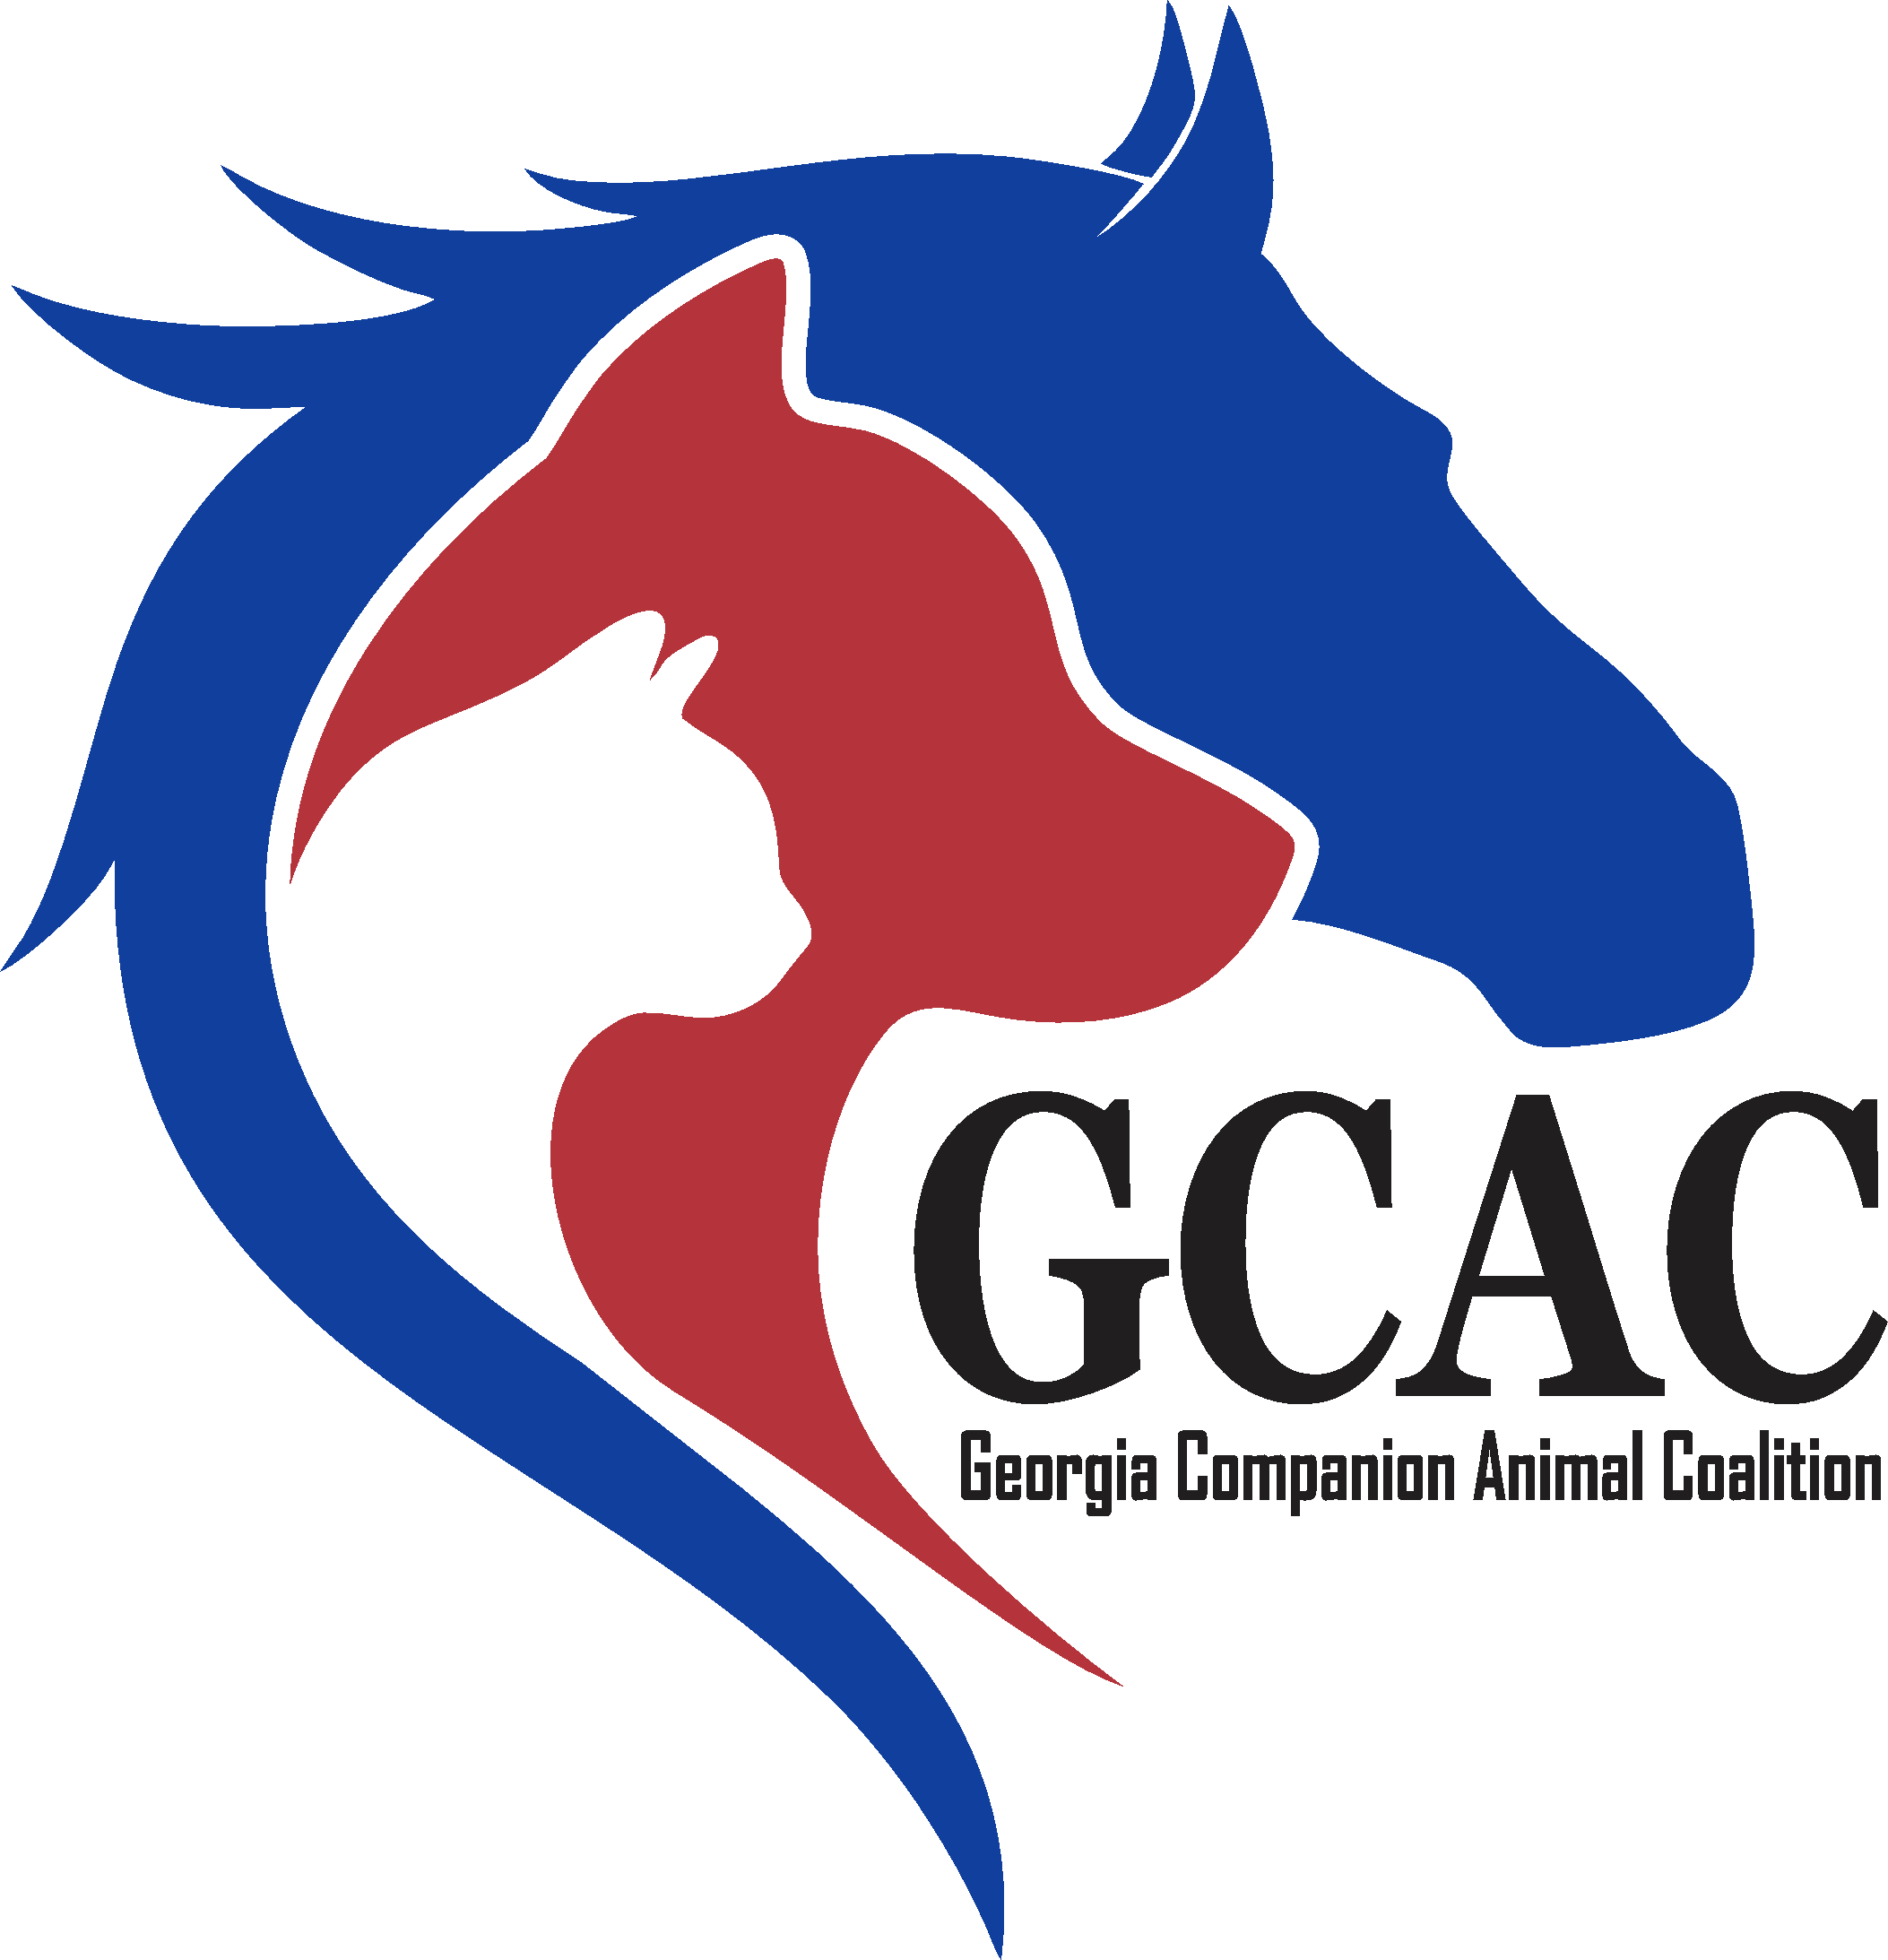 Georgia Companion Animal Coalition logo